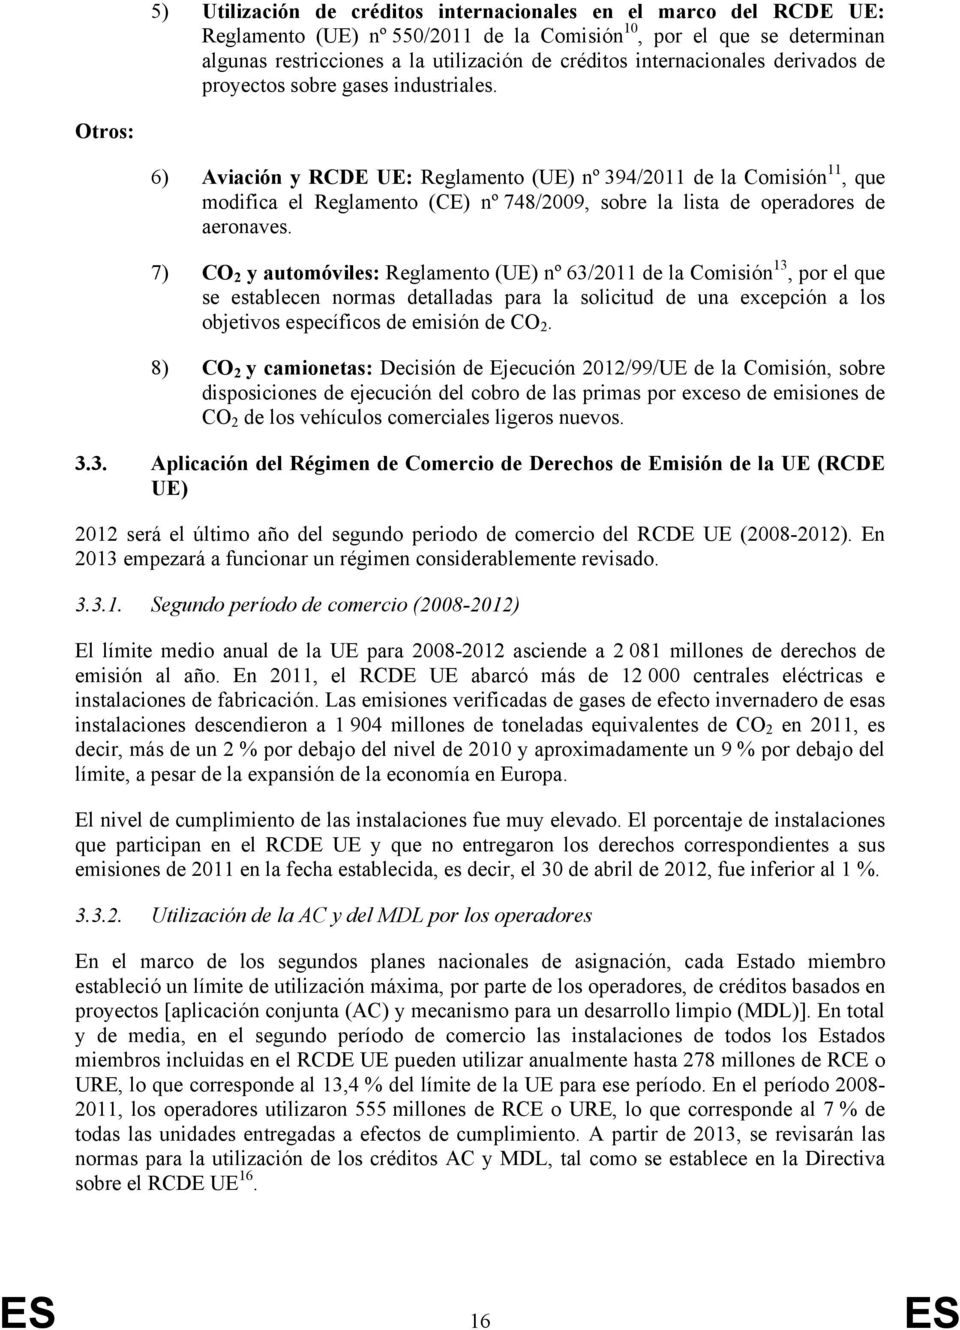 Otros: 6) Aviación y RCDE UE: Reglamento (UE) nº 394/2011 de la Comisión 11, que modifica el Reglamento (CE) nº 748/2009, sobre la lista de operadores de aeronaves.